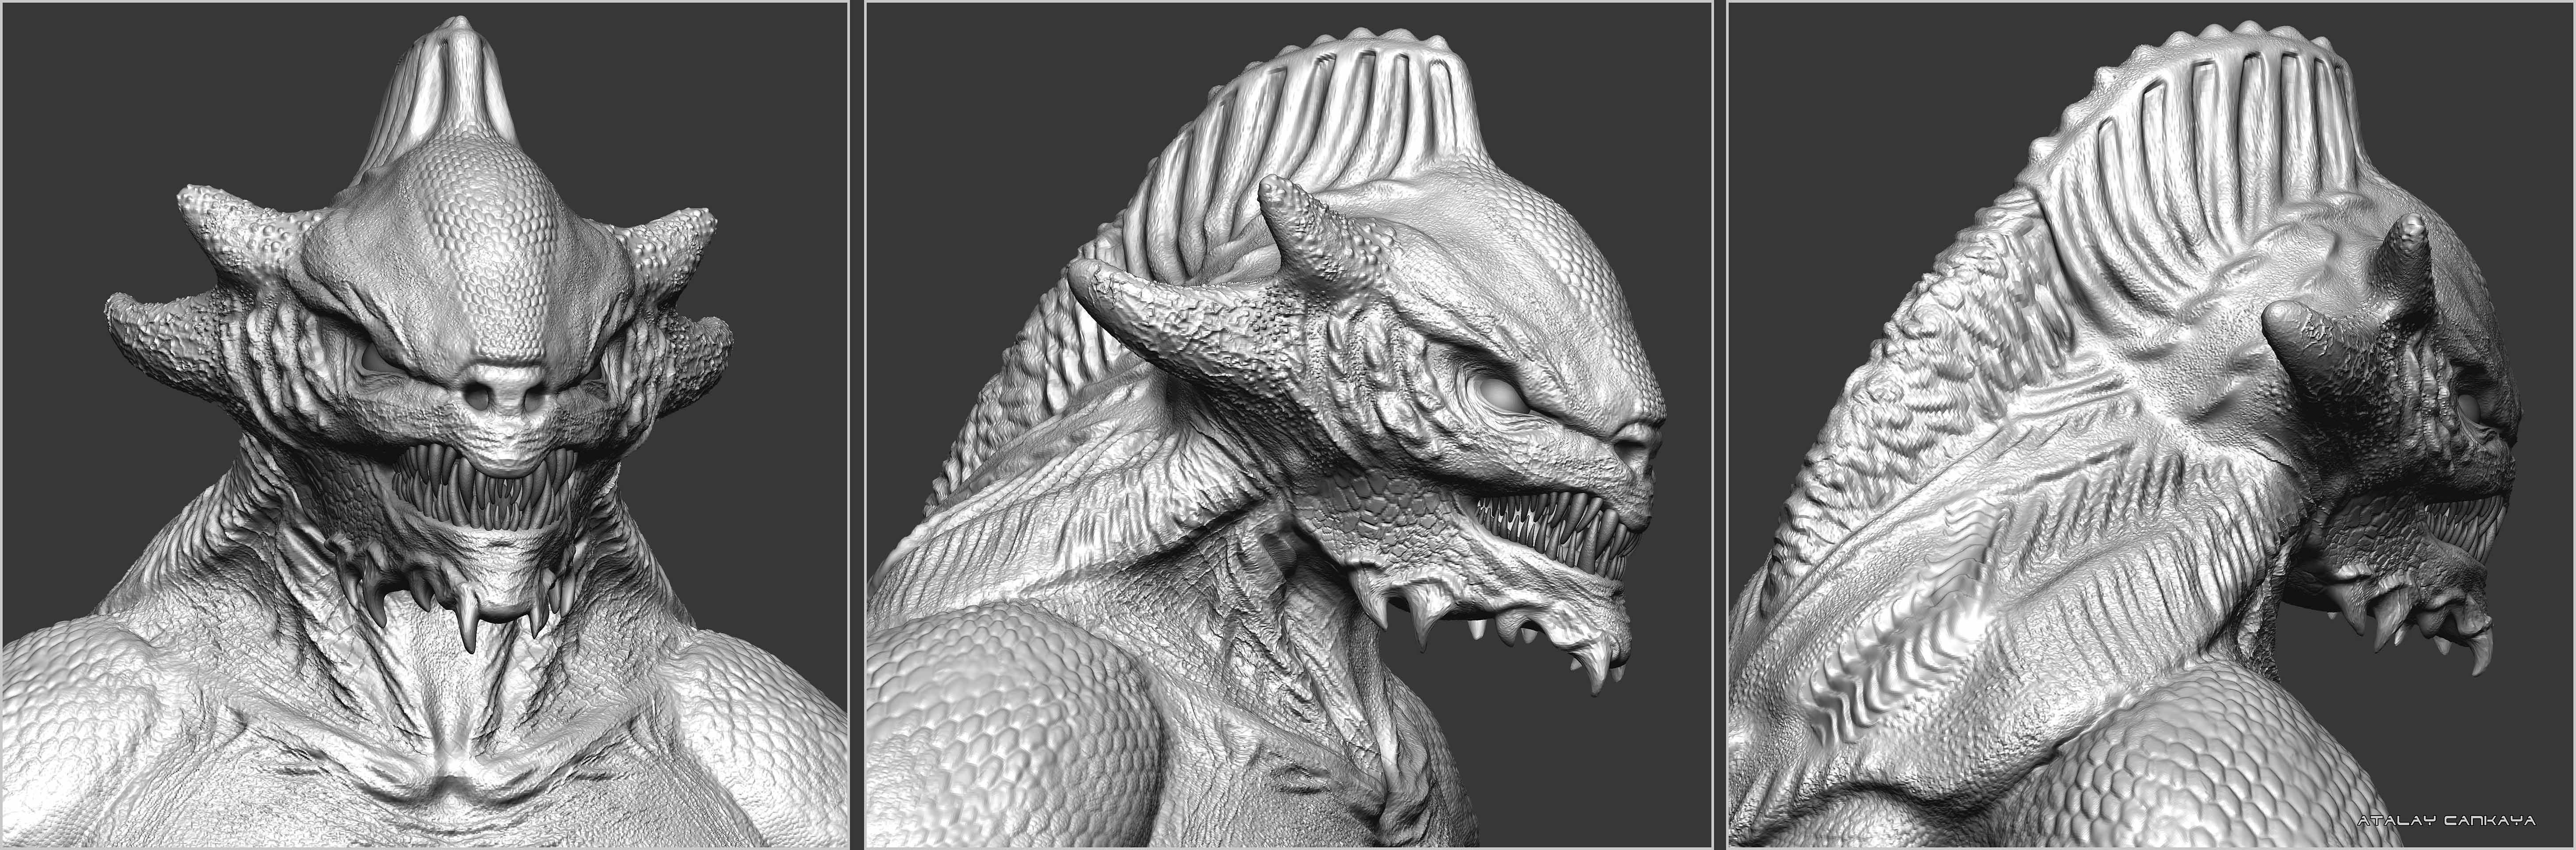 Reptile Beast - Clay 2.jpg